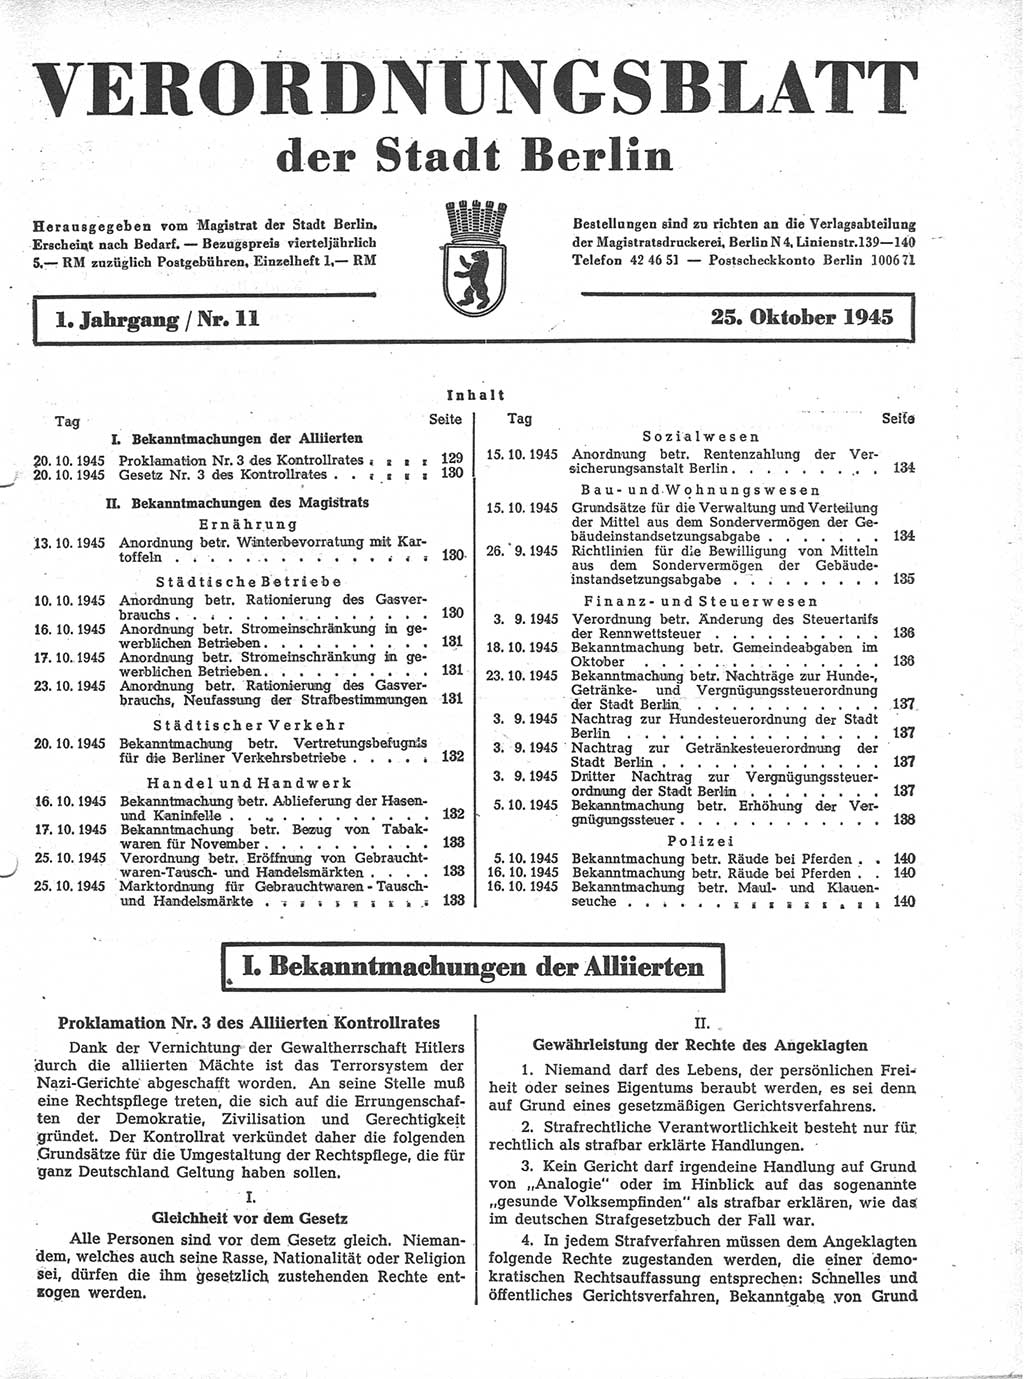 Verordnungsblatt (VOBl.) der Stadt Berlin 1945, Seite 129 (VOBl. Bln. 1945, S. 129)